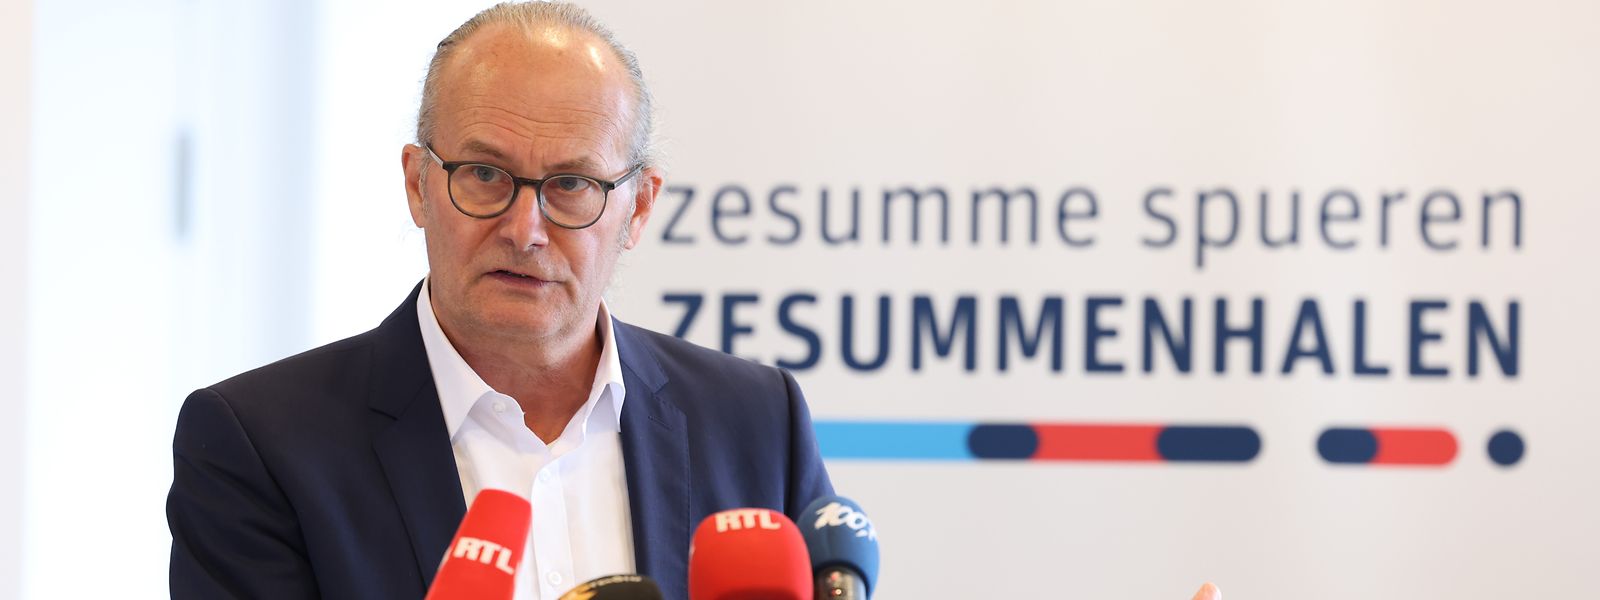 Energieminister Claude Turmes (Déi Gréng) mit dem Narrativ der Sparkampagne: „Zesumme spueren - Zesummenhalen“.